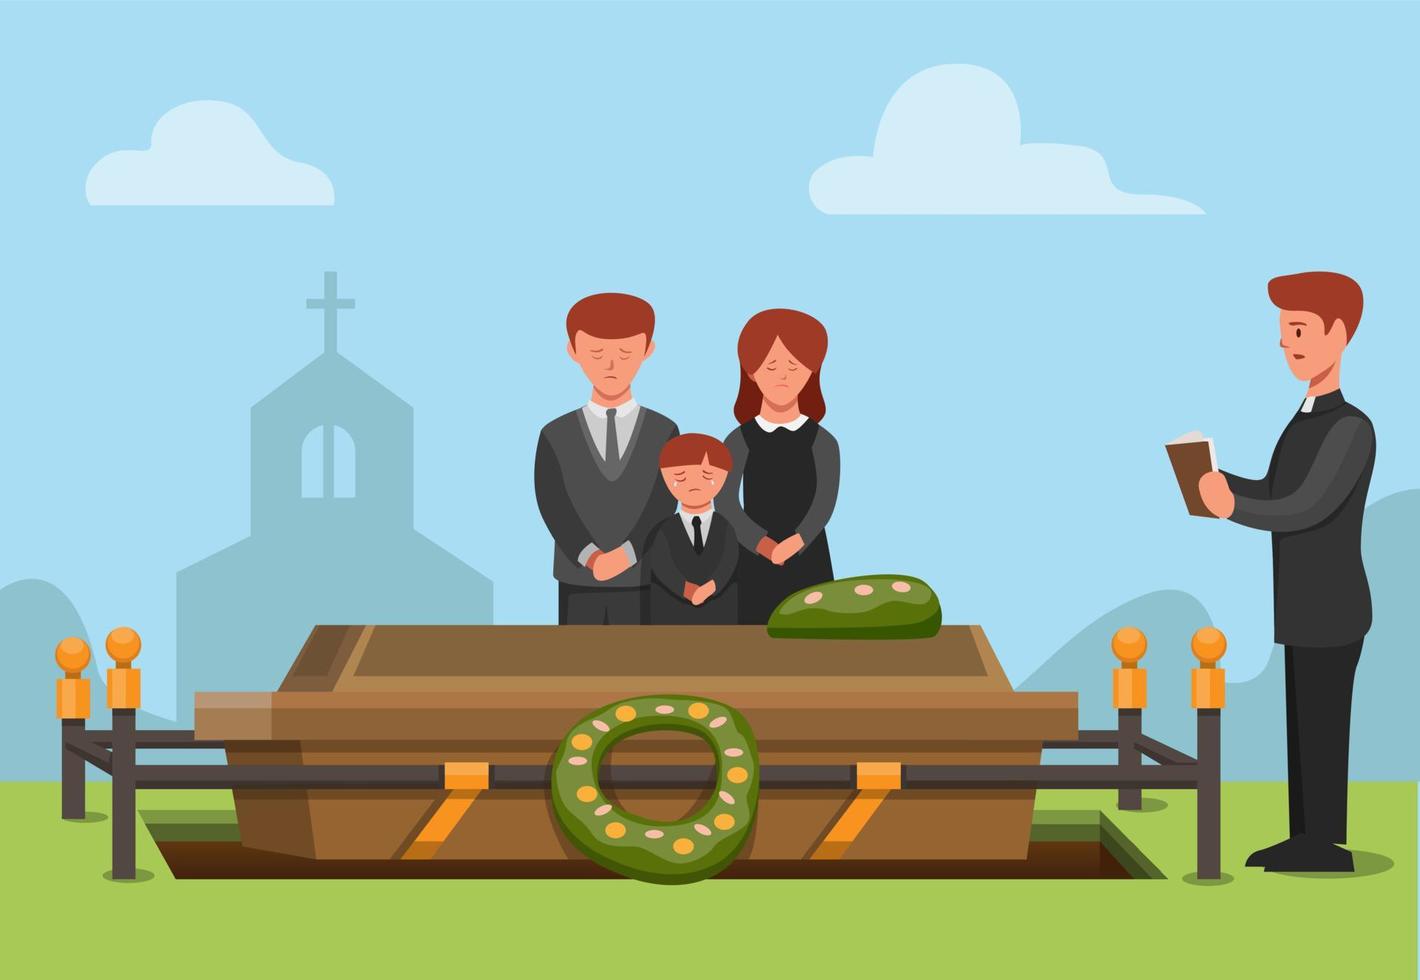 ceremonial fúnebre en la religión cristiana. gente triste miembro de la familia falleció concepto escena ilustración en vector de dibujos animados